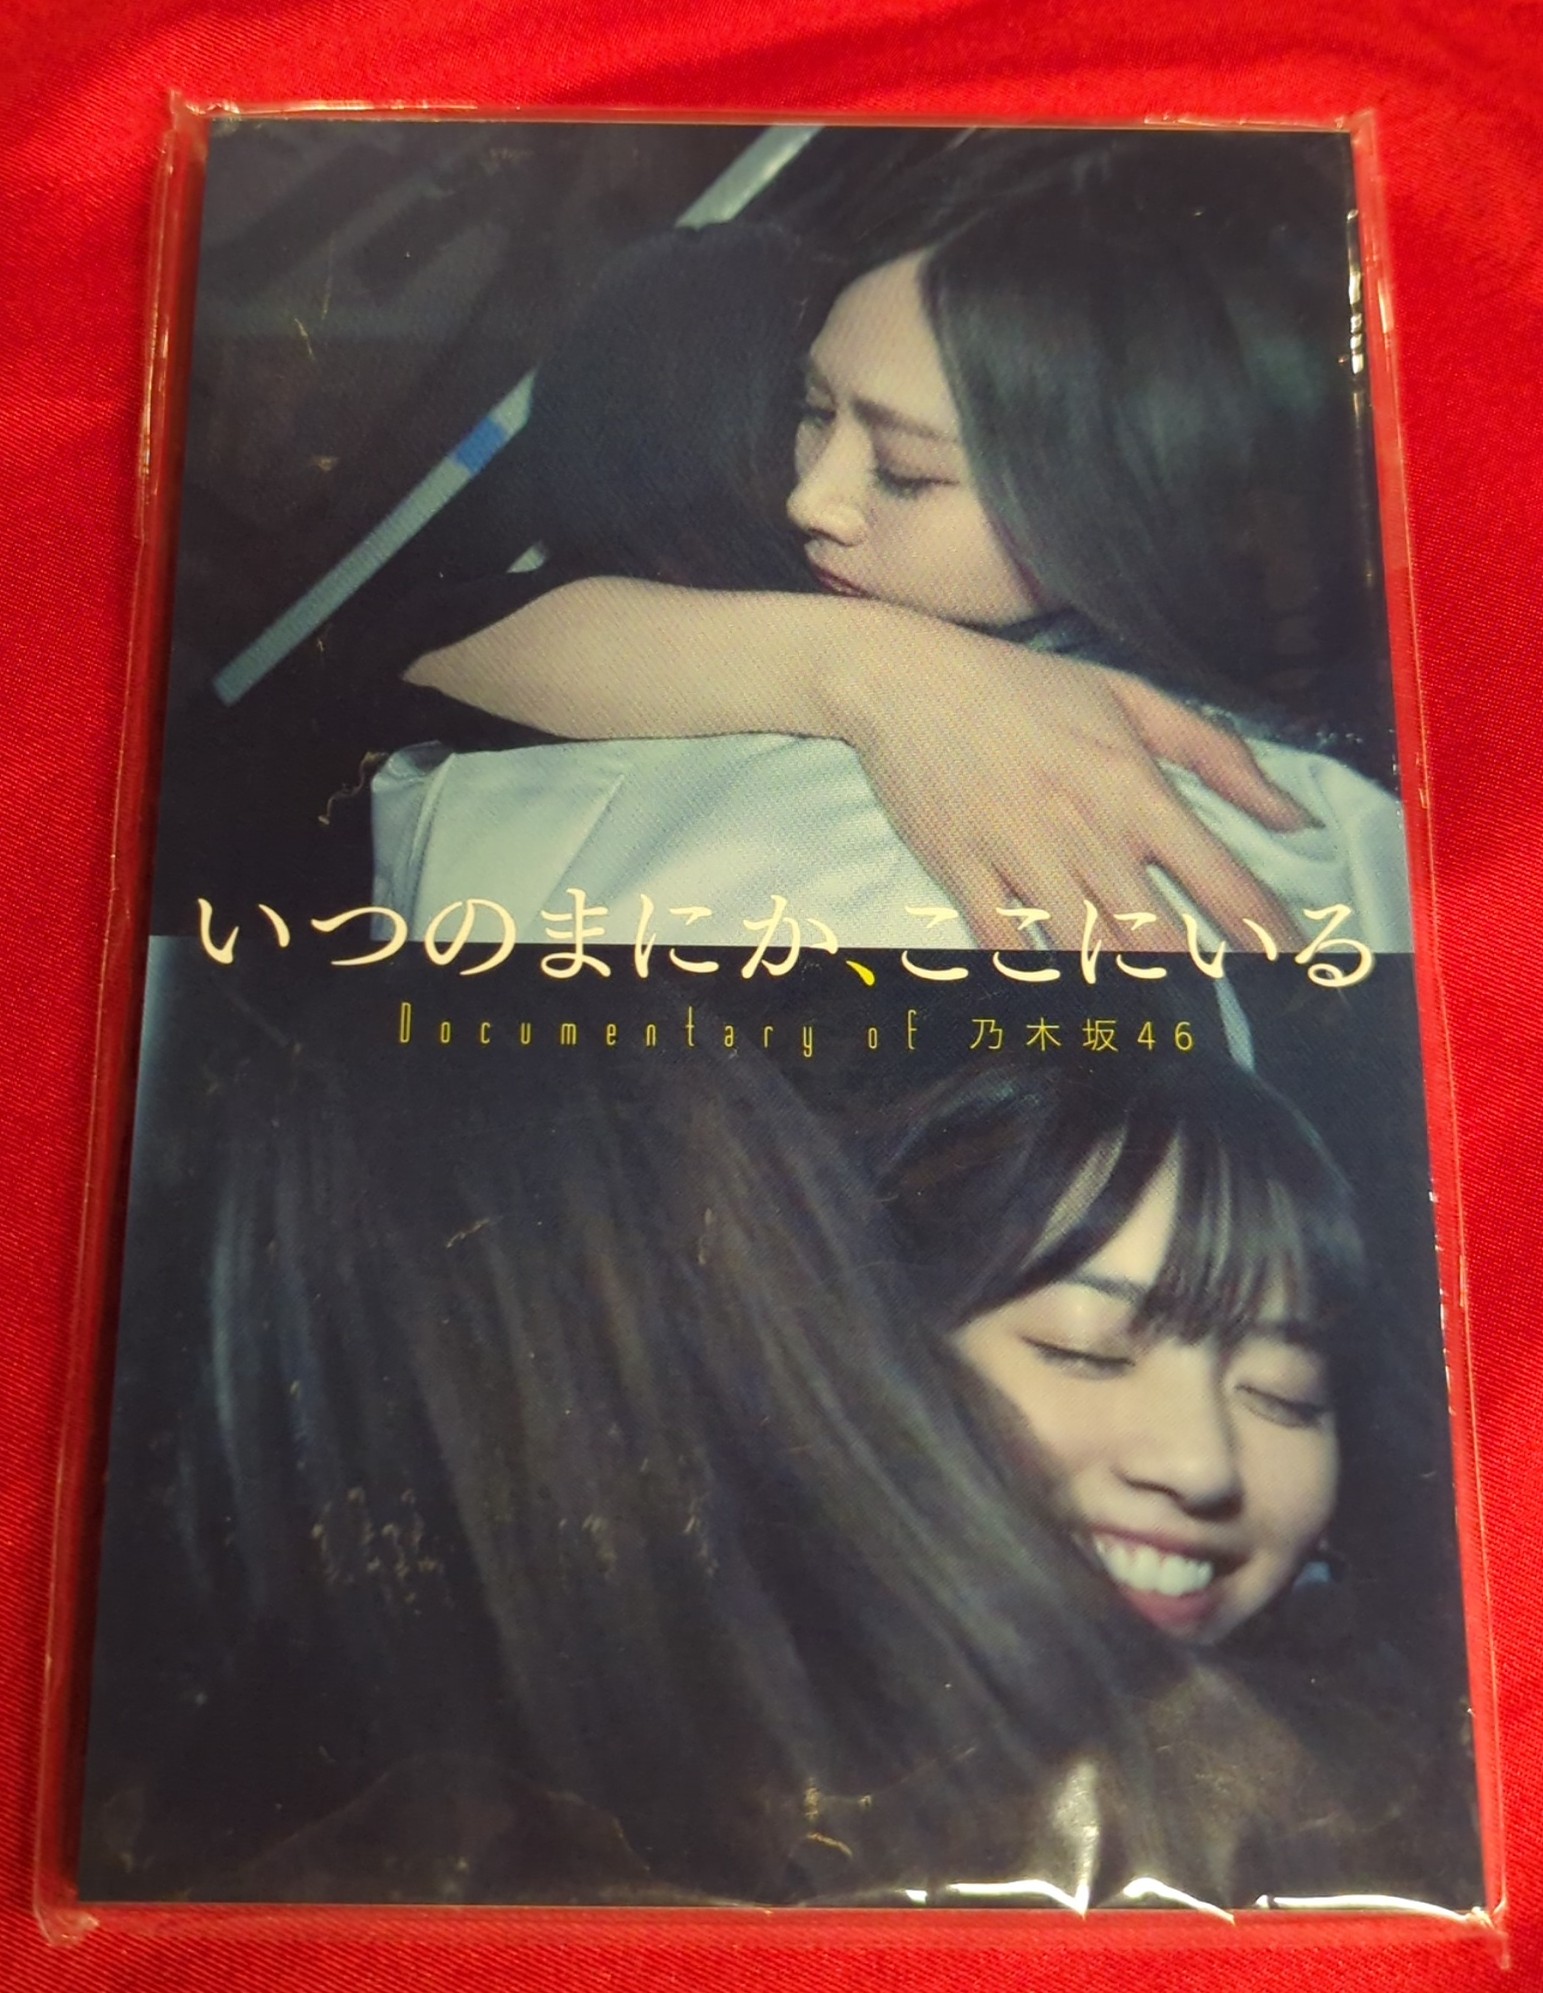 乃木坂46 いつのまにか、ここにいる Documentary of 乃木坂46 20枚組ポストカード<セブンネット限定>